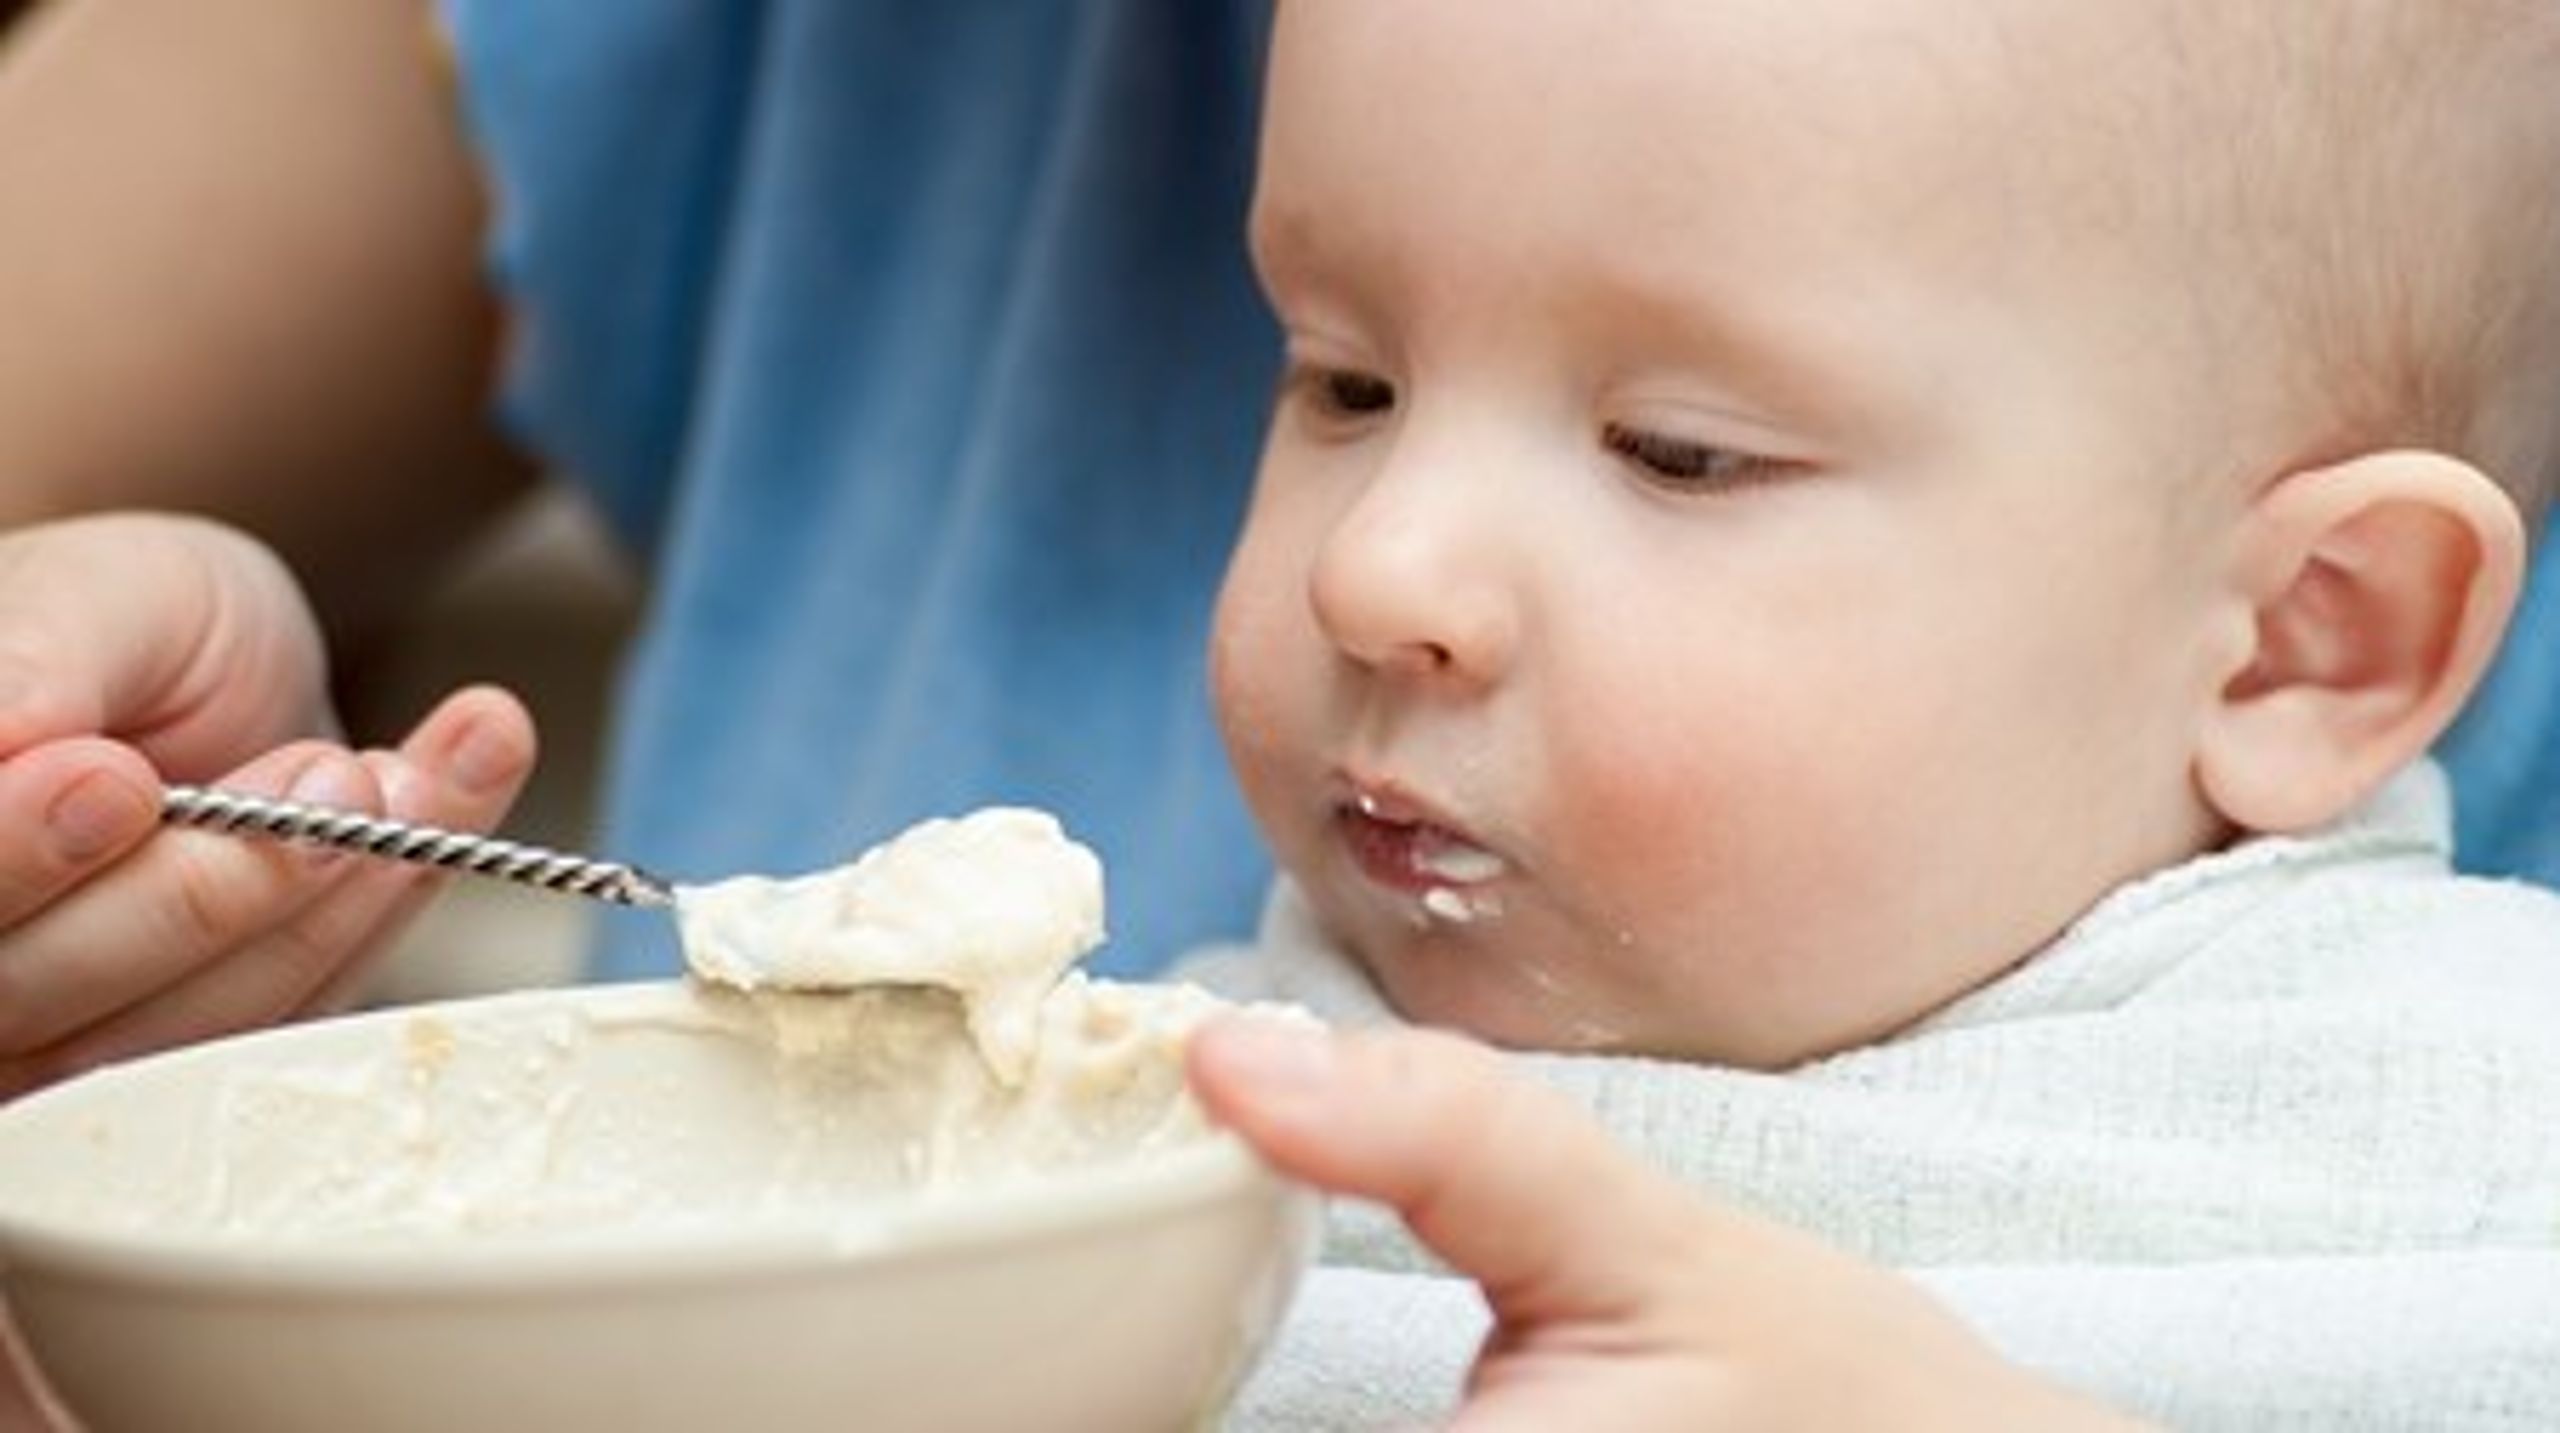 DTU Fødevareinstituttet mener, at man skal ned på en lavere grænseværdi af tropanalkaloider, hvis man skal være sikker på ikke at overskride den akutte referencedosis for små børn, der flere gange dagligt spiser en del af den grød, der kan indeholde de giftige stoffer.